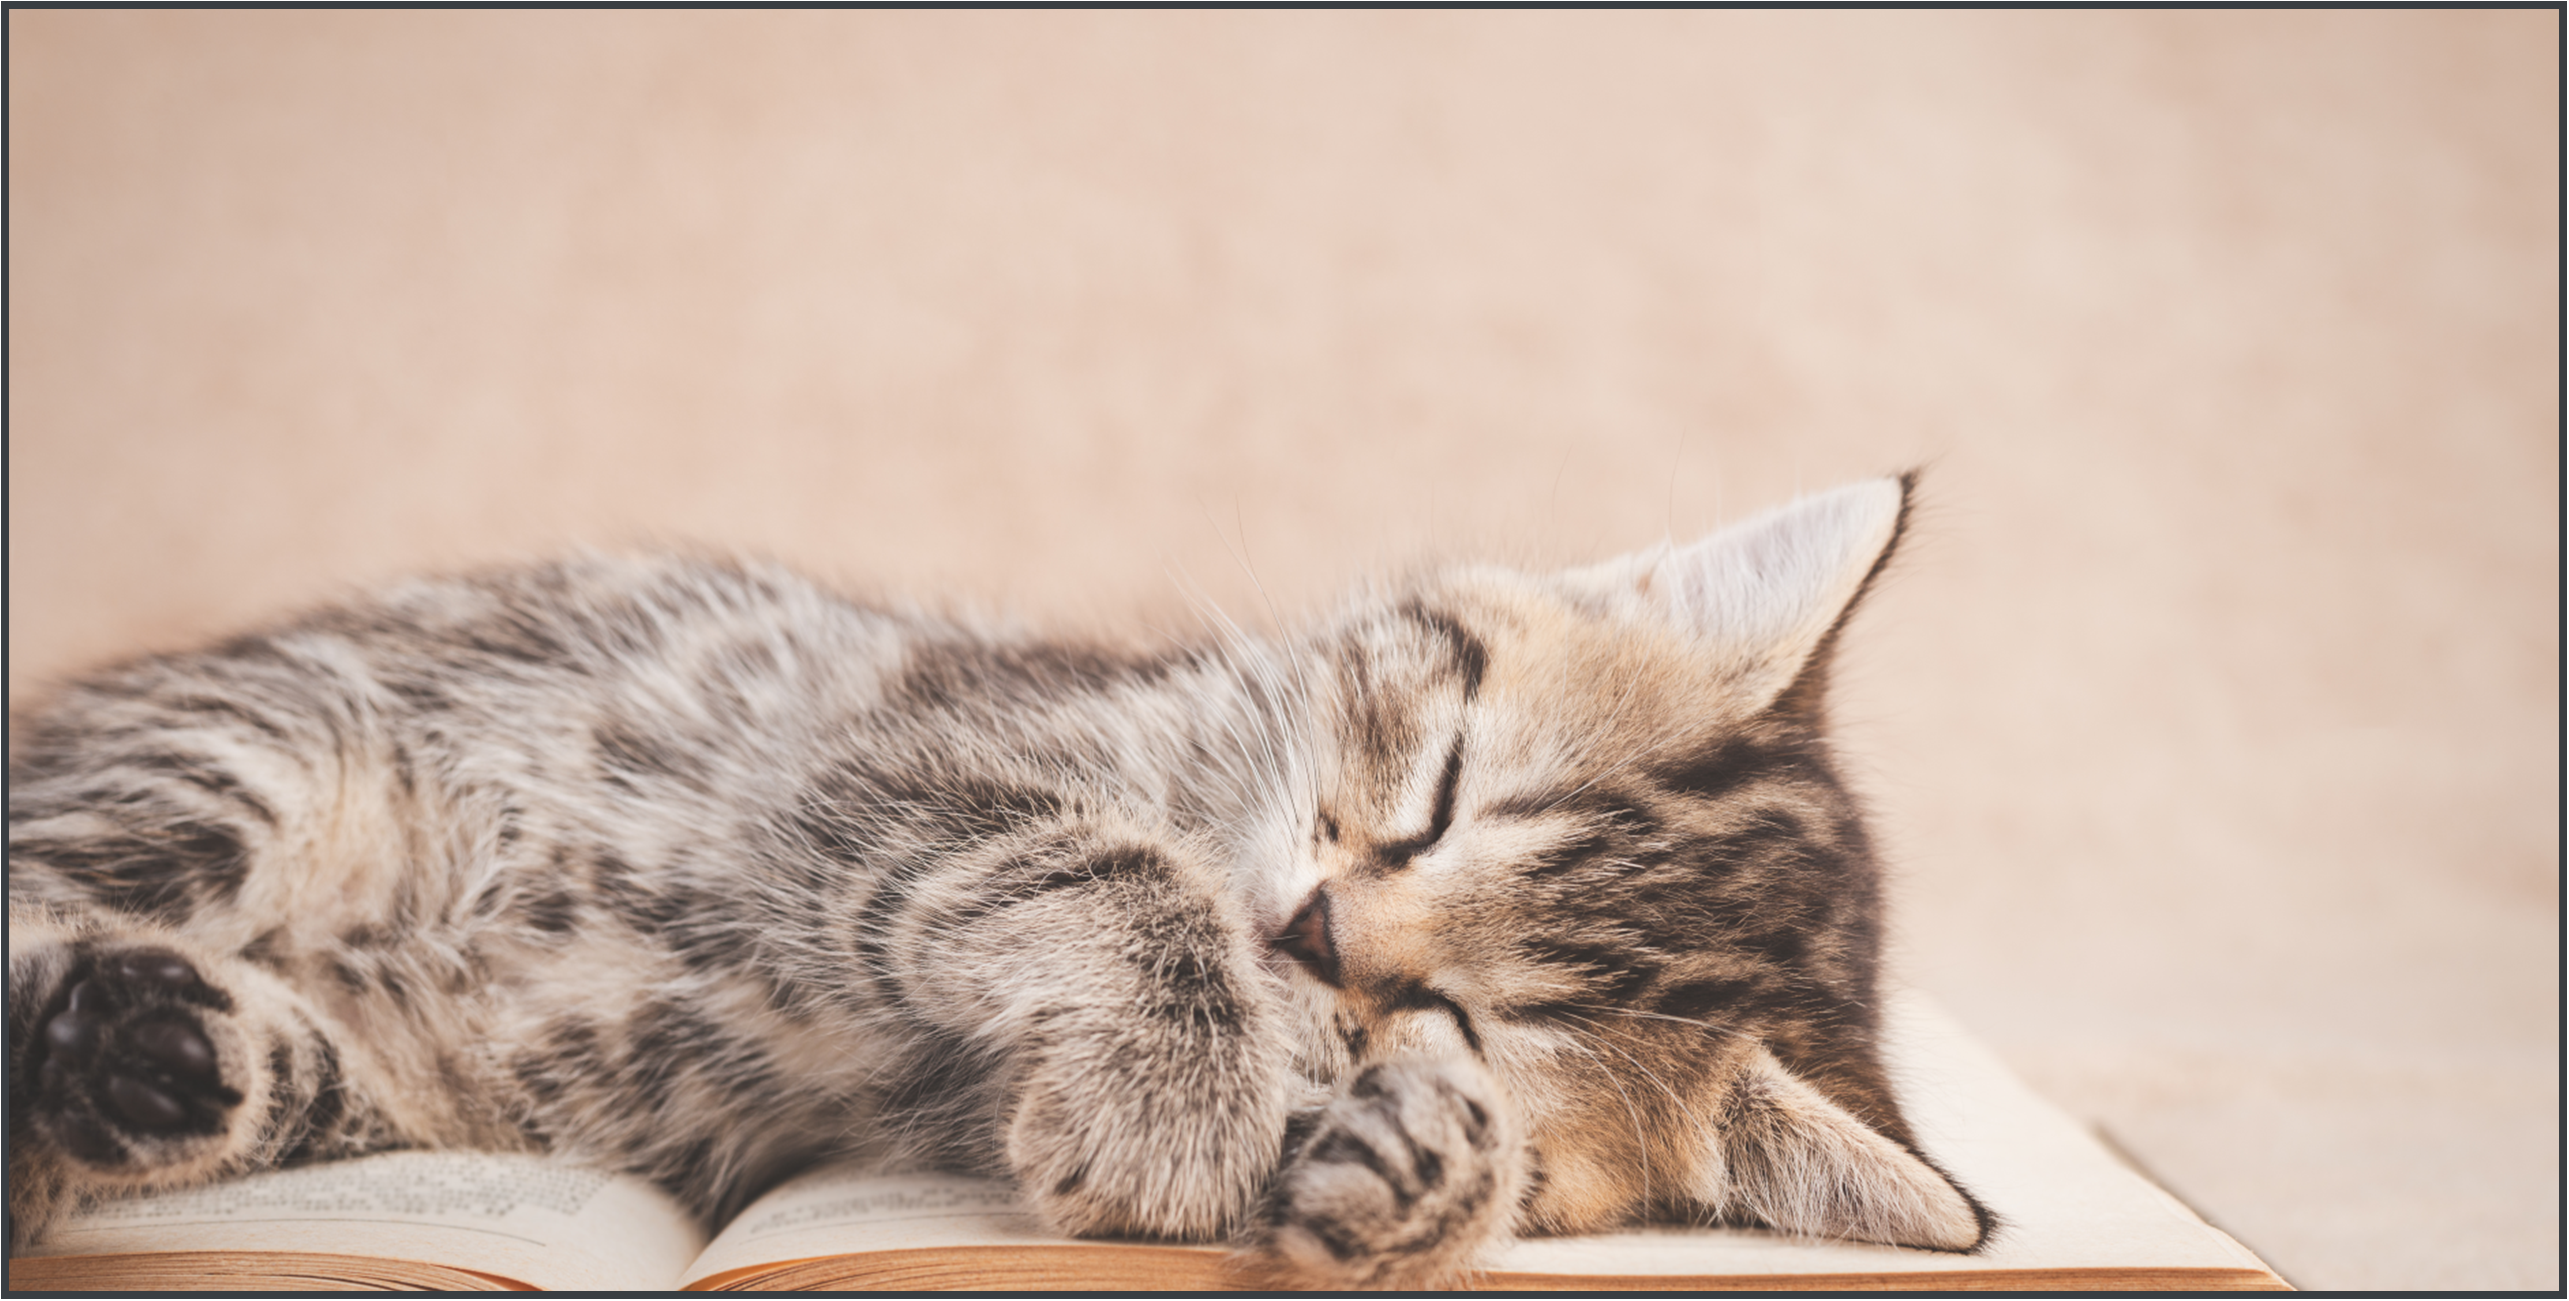 Kitten sleeping on top of an open book